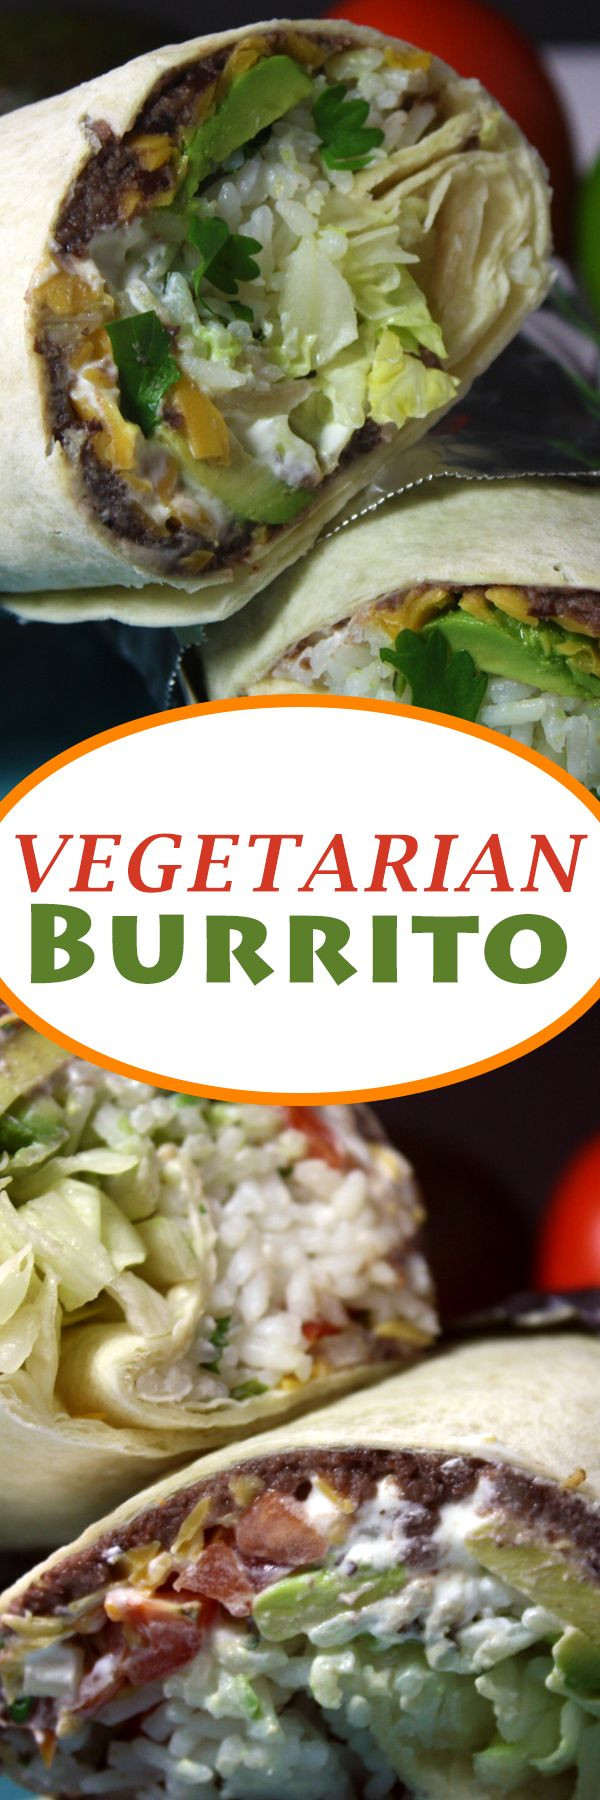 Vegetarian Burritos Jamie Oliver
 easy ve arian burrito recipe